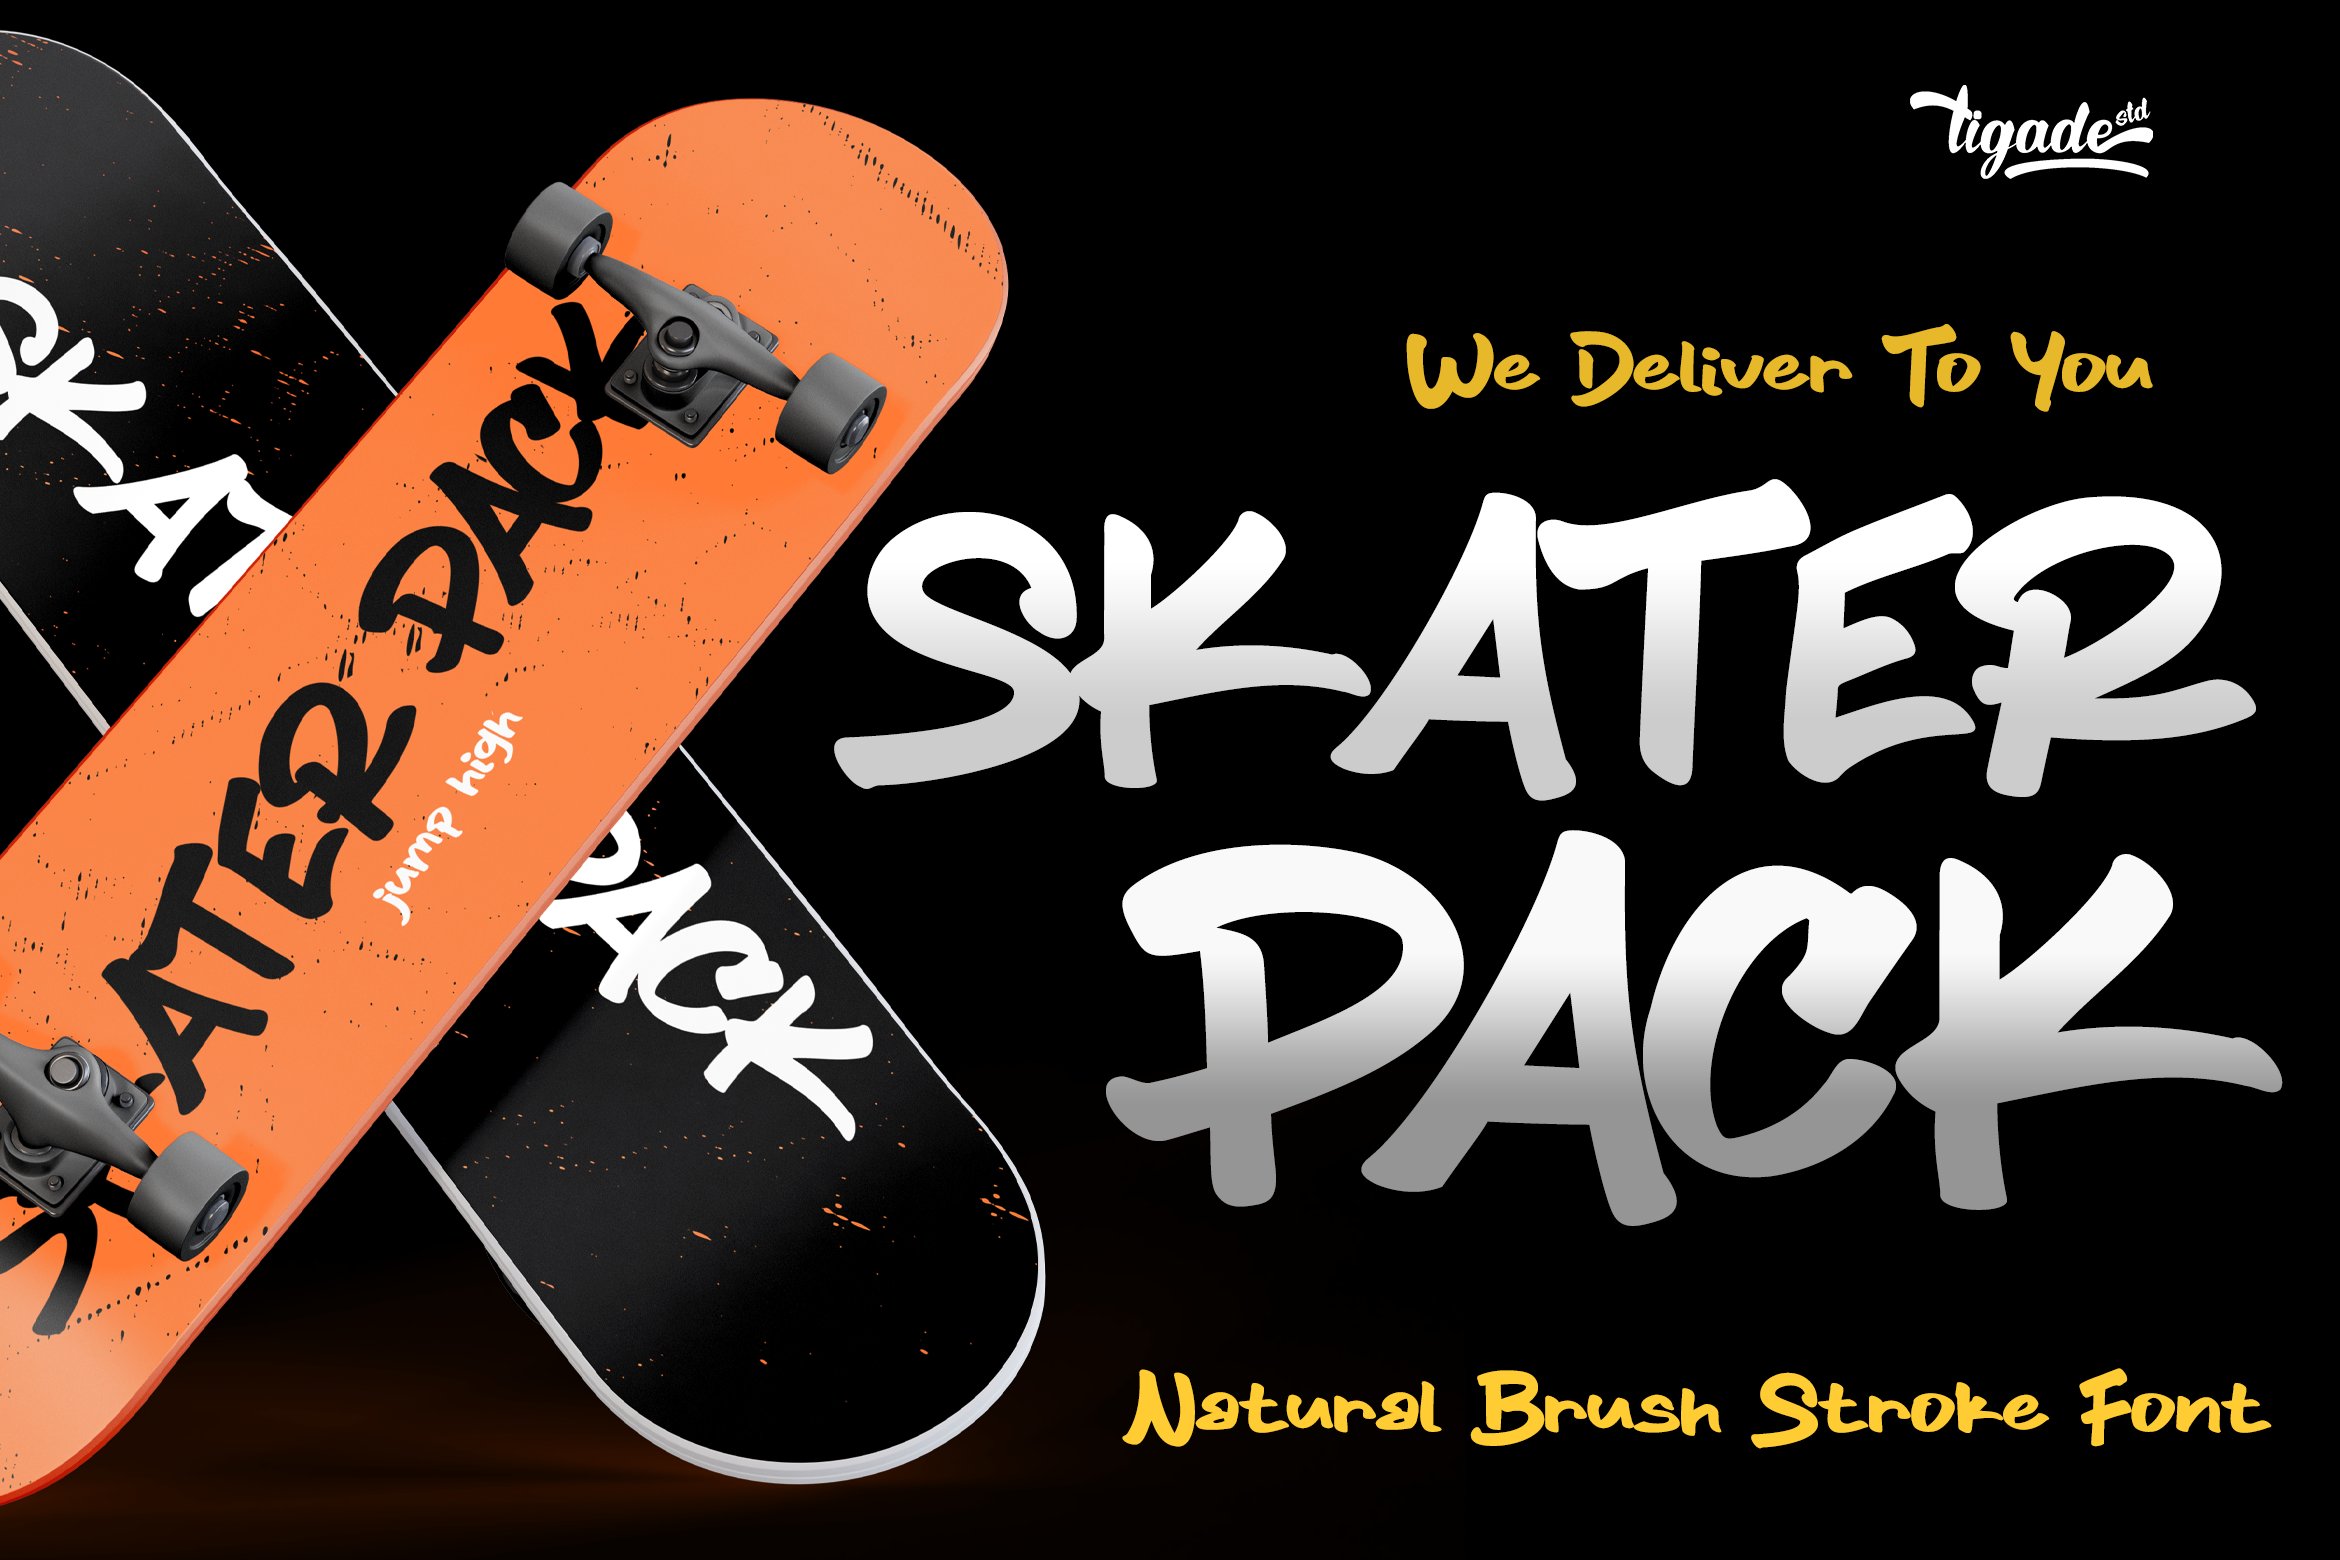 Skater Pack | Graffiti Font cover image.